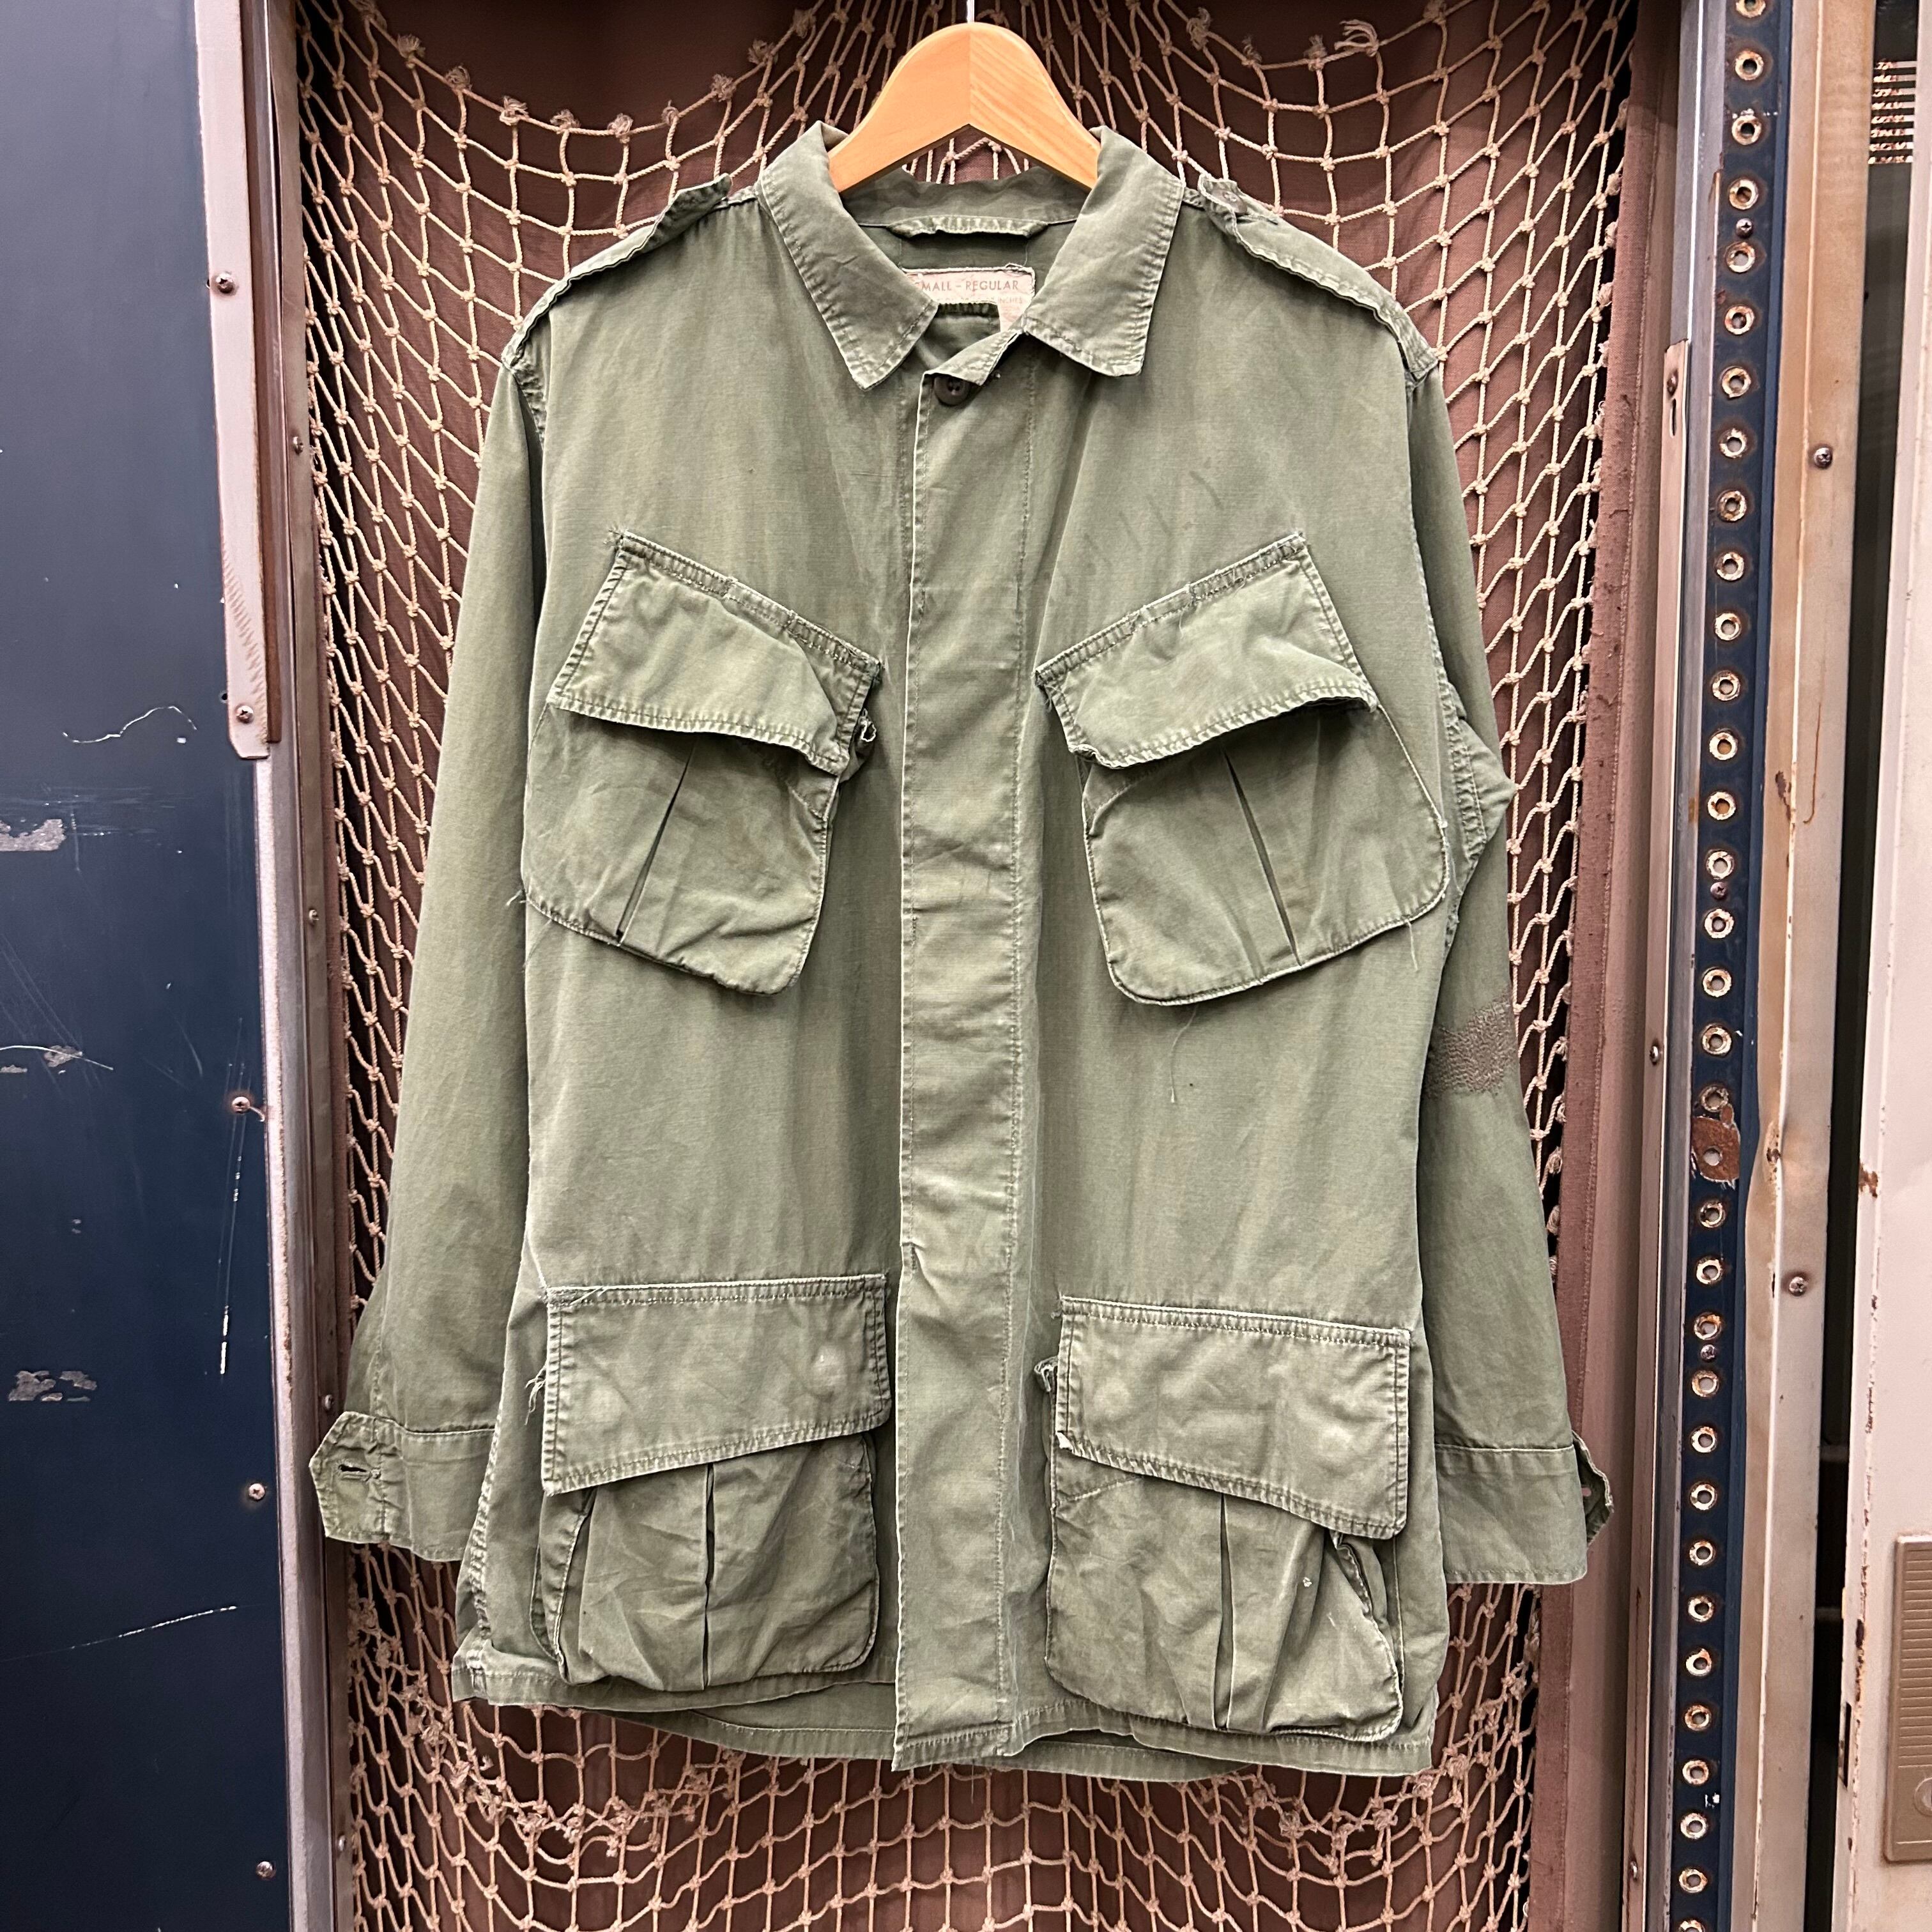 US ARMY 60s jungle fatigue jacket